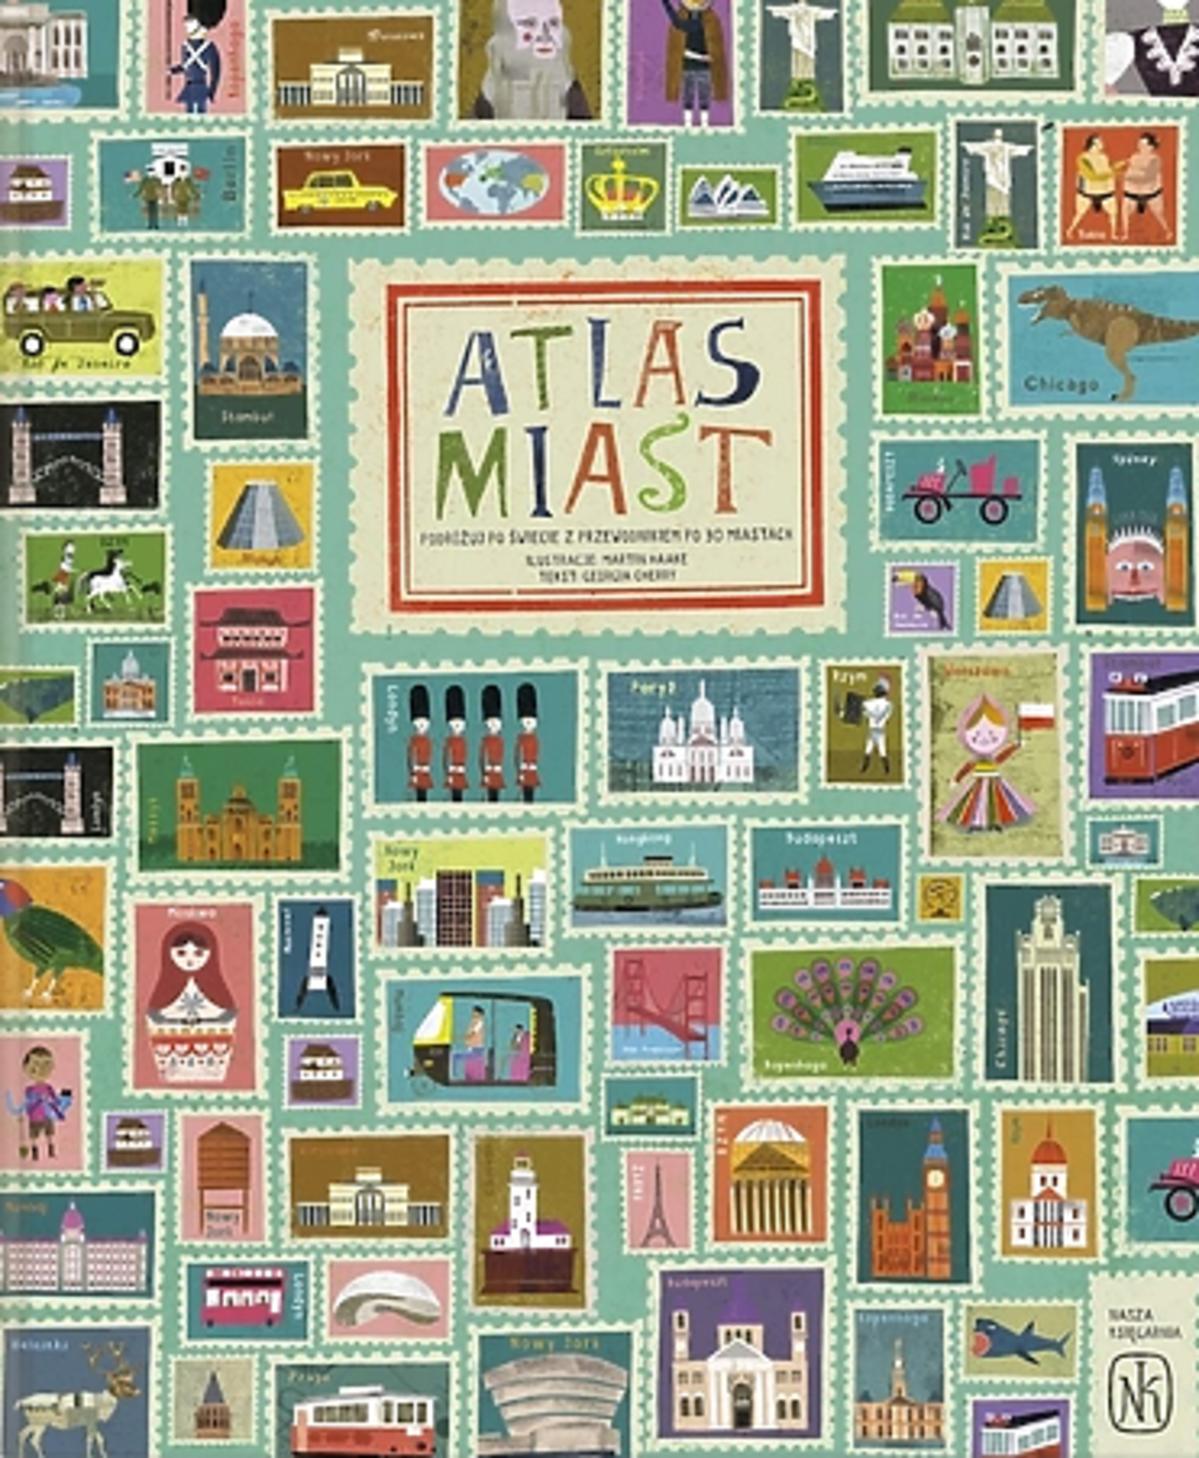 Atlas miast